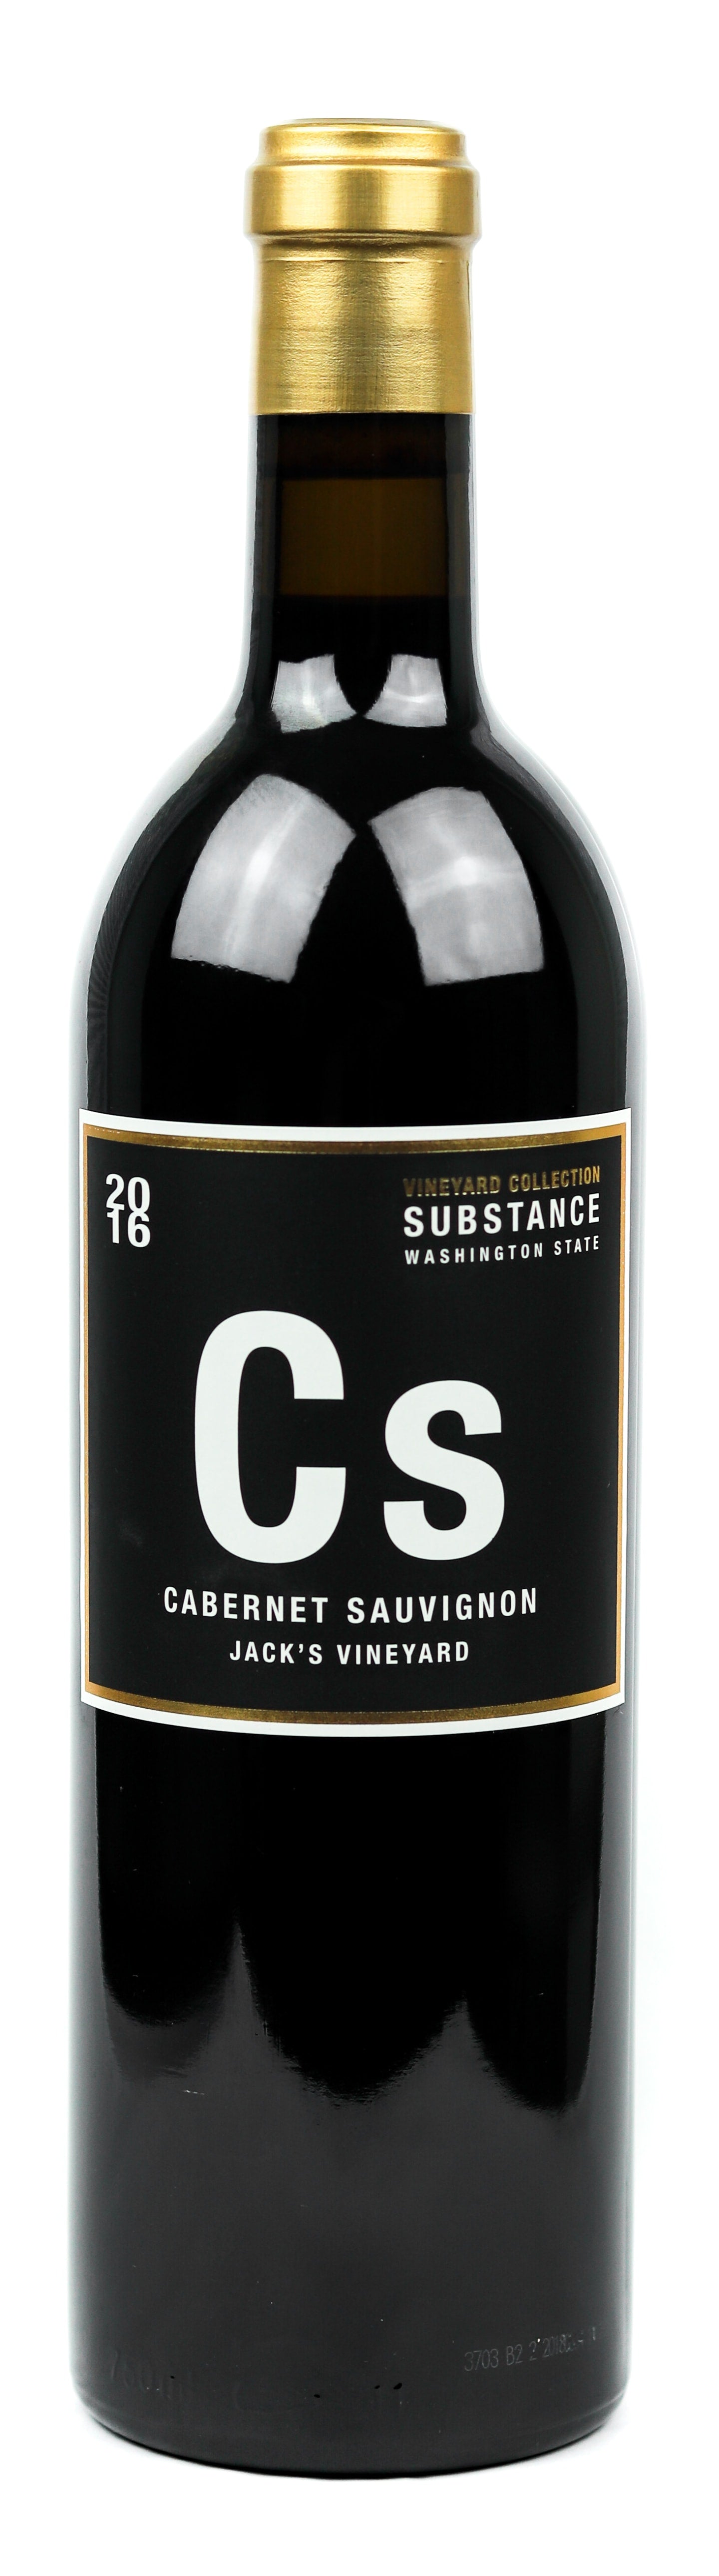 Super Substance Cabernet Sauvignon Jack's Vineyard 2016